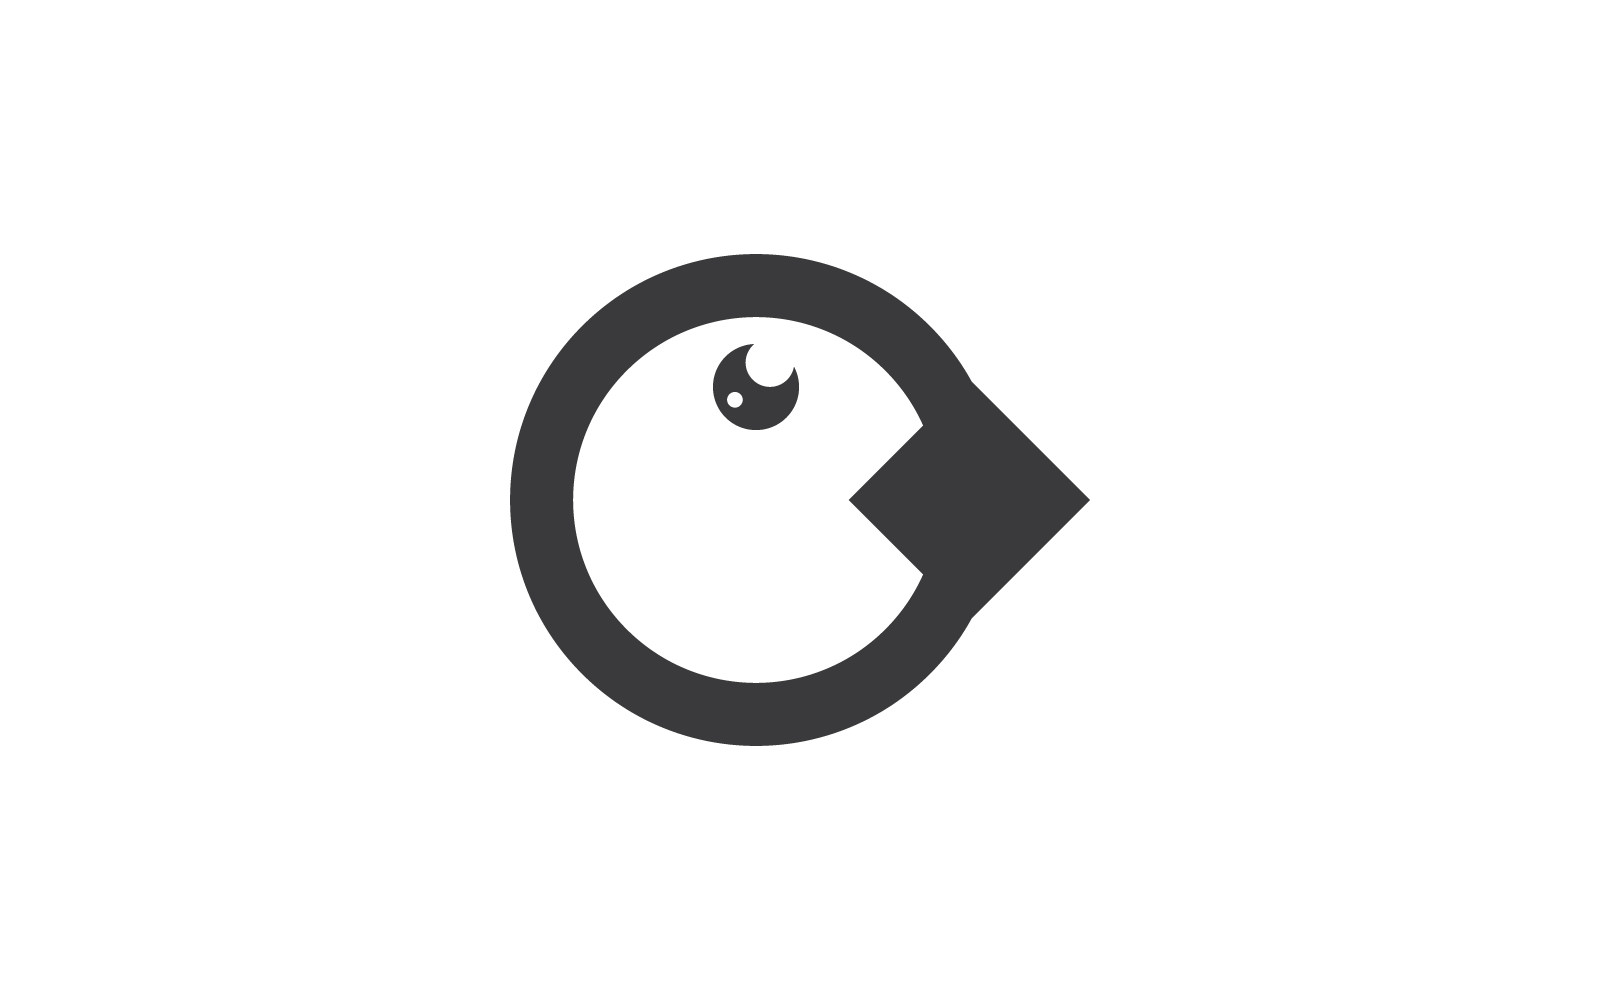 Penguin logo icon vector flat design